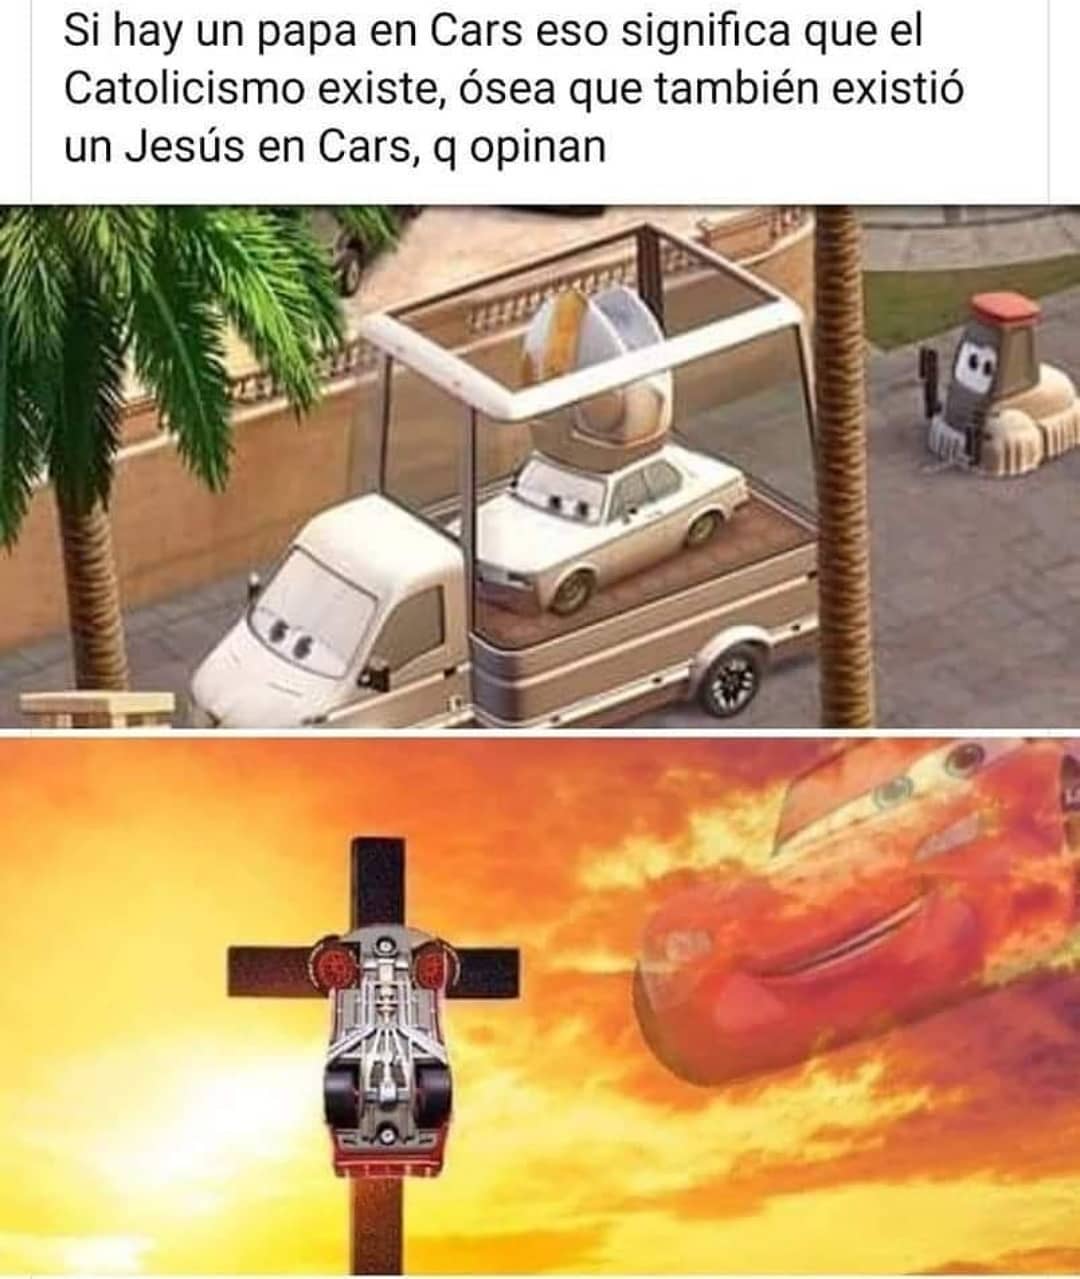 Si hay un papa en Cars eso significa que el Catolicismo existe, ósea que también existió un Jesús en Cars, q opinan.